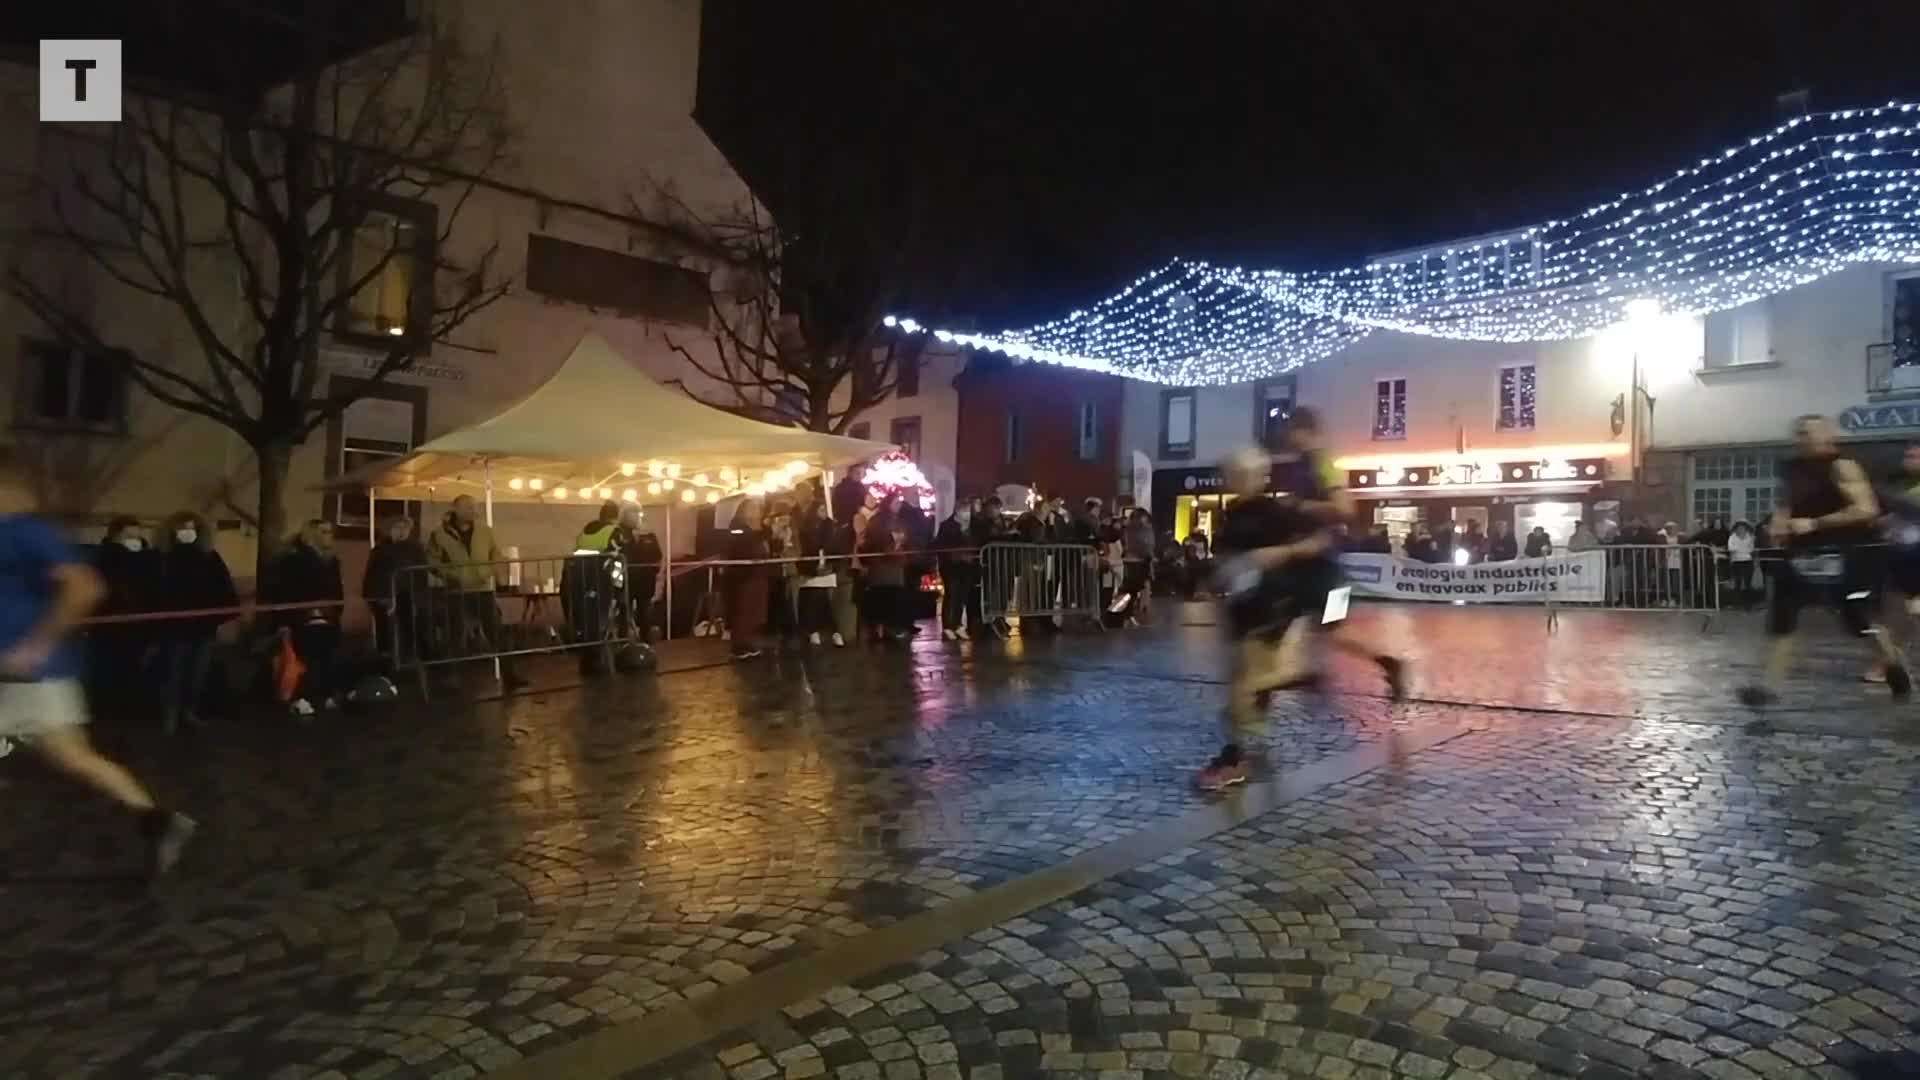 Corrida nocturne à Carhaix : les coureurs de l'ALCP font leur festival (Le Télégramme)